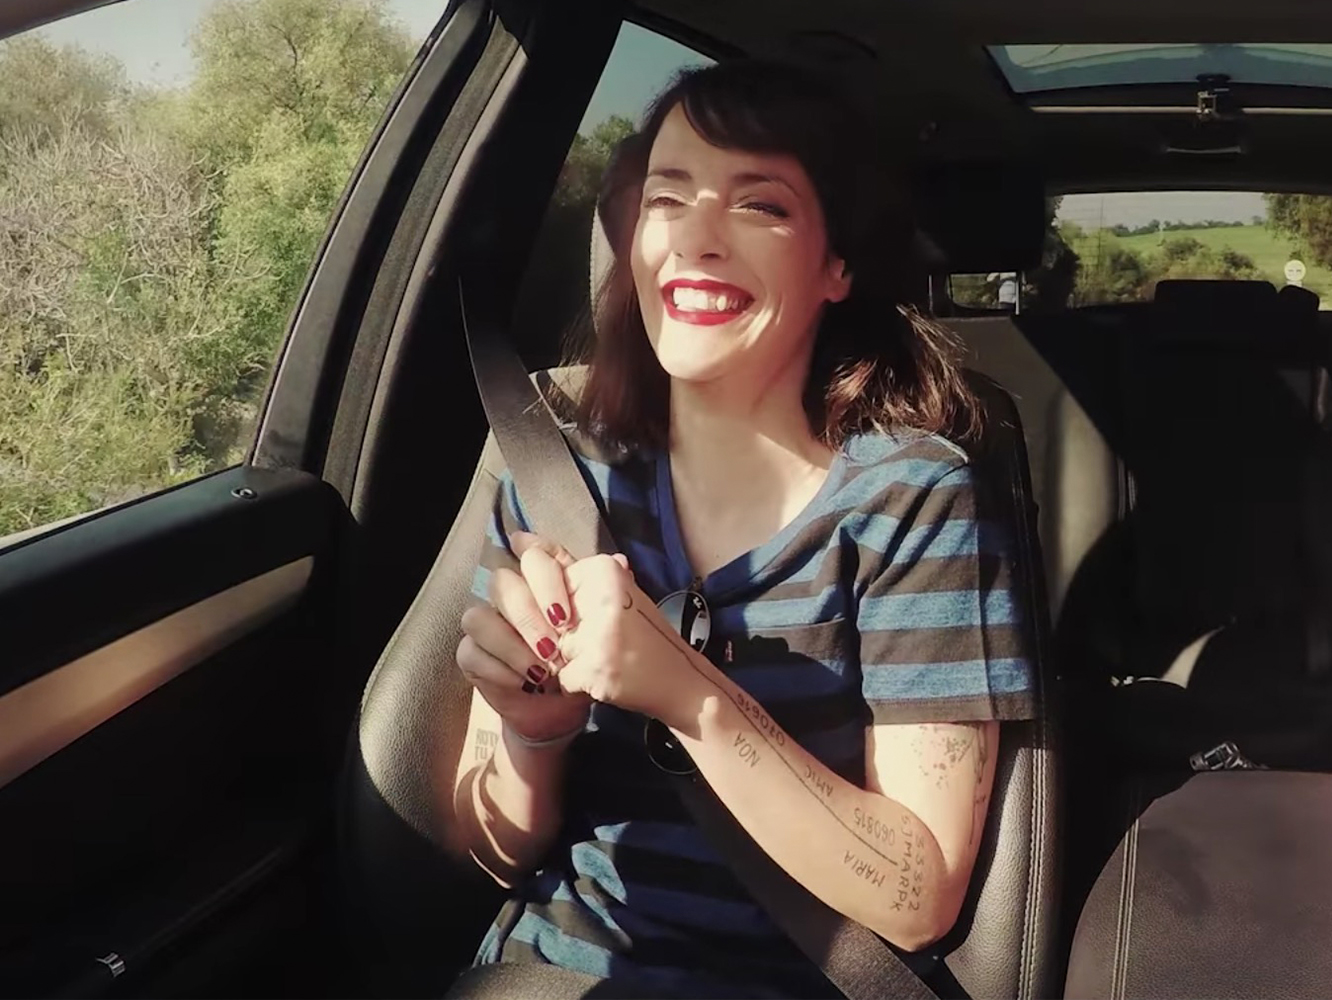  Vega lanza un faux ‘Carpool Karaoke’ con ‘Puedes Ser’ como banda sonora